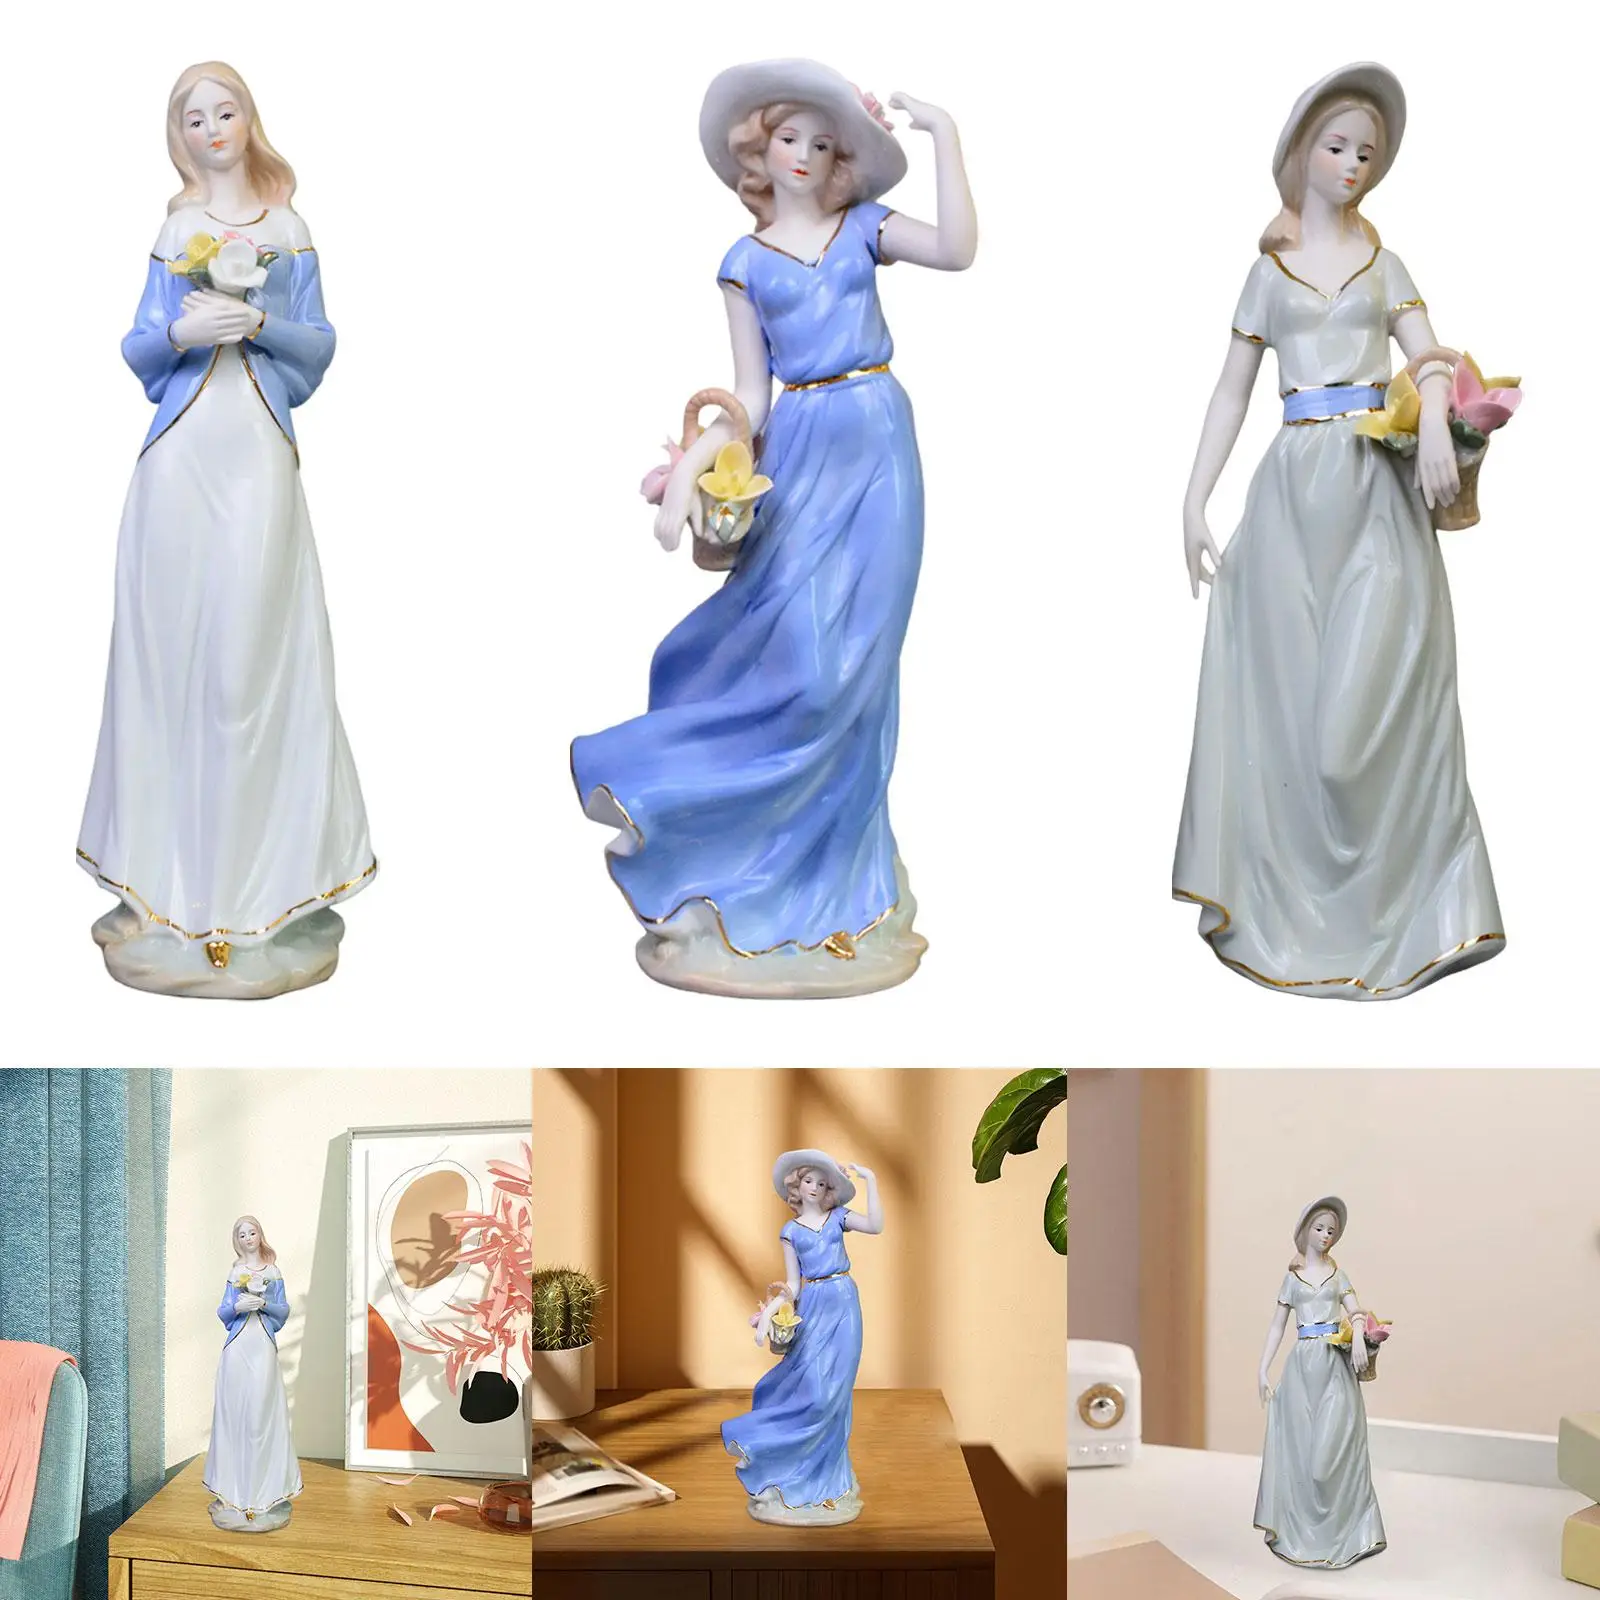 تمثال بورسلين لديكور المنزل ، شخصية فتاة ، فن حديث ، ديكور ، مكتب ، طاولة ، خزانة كتب ، لطيفة